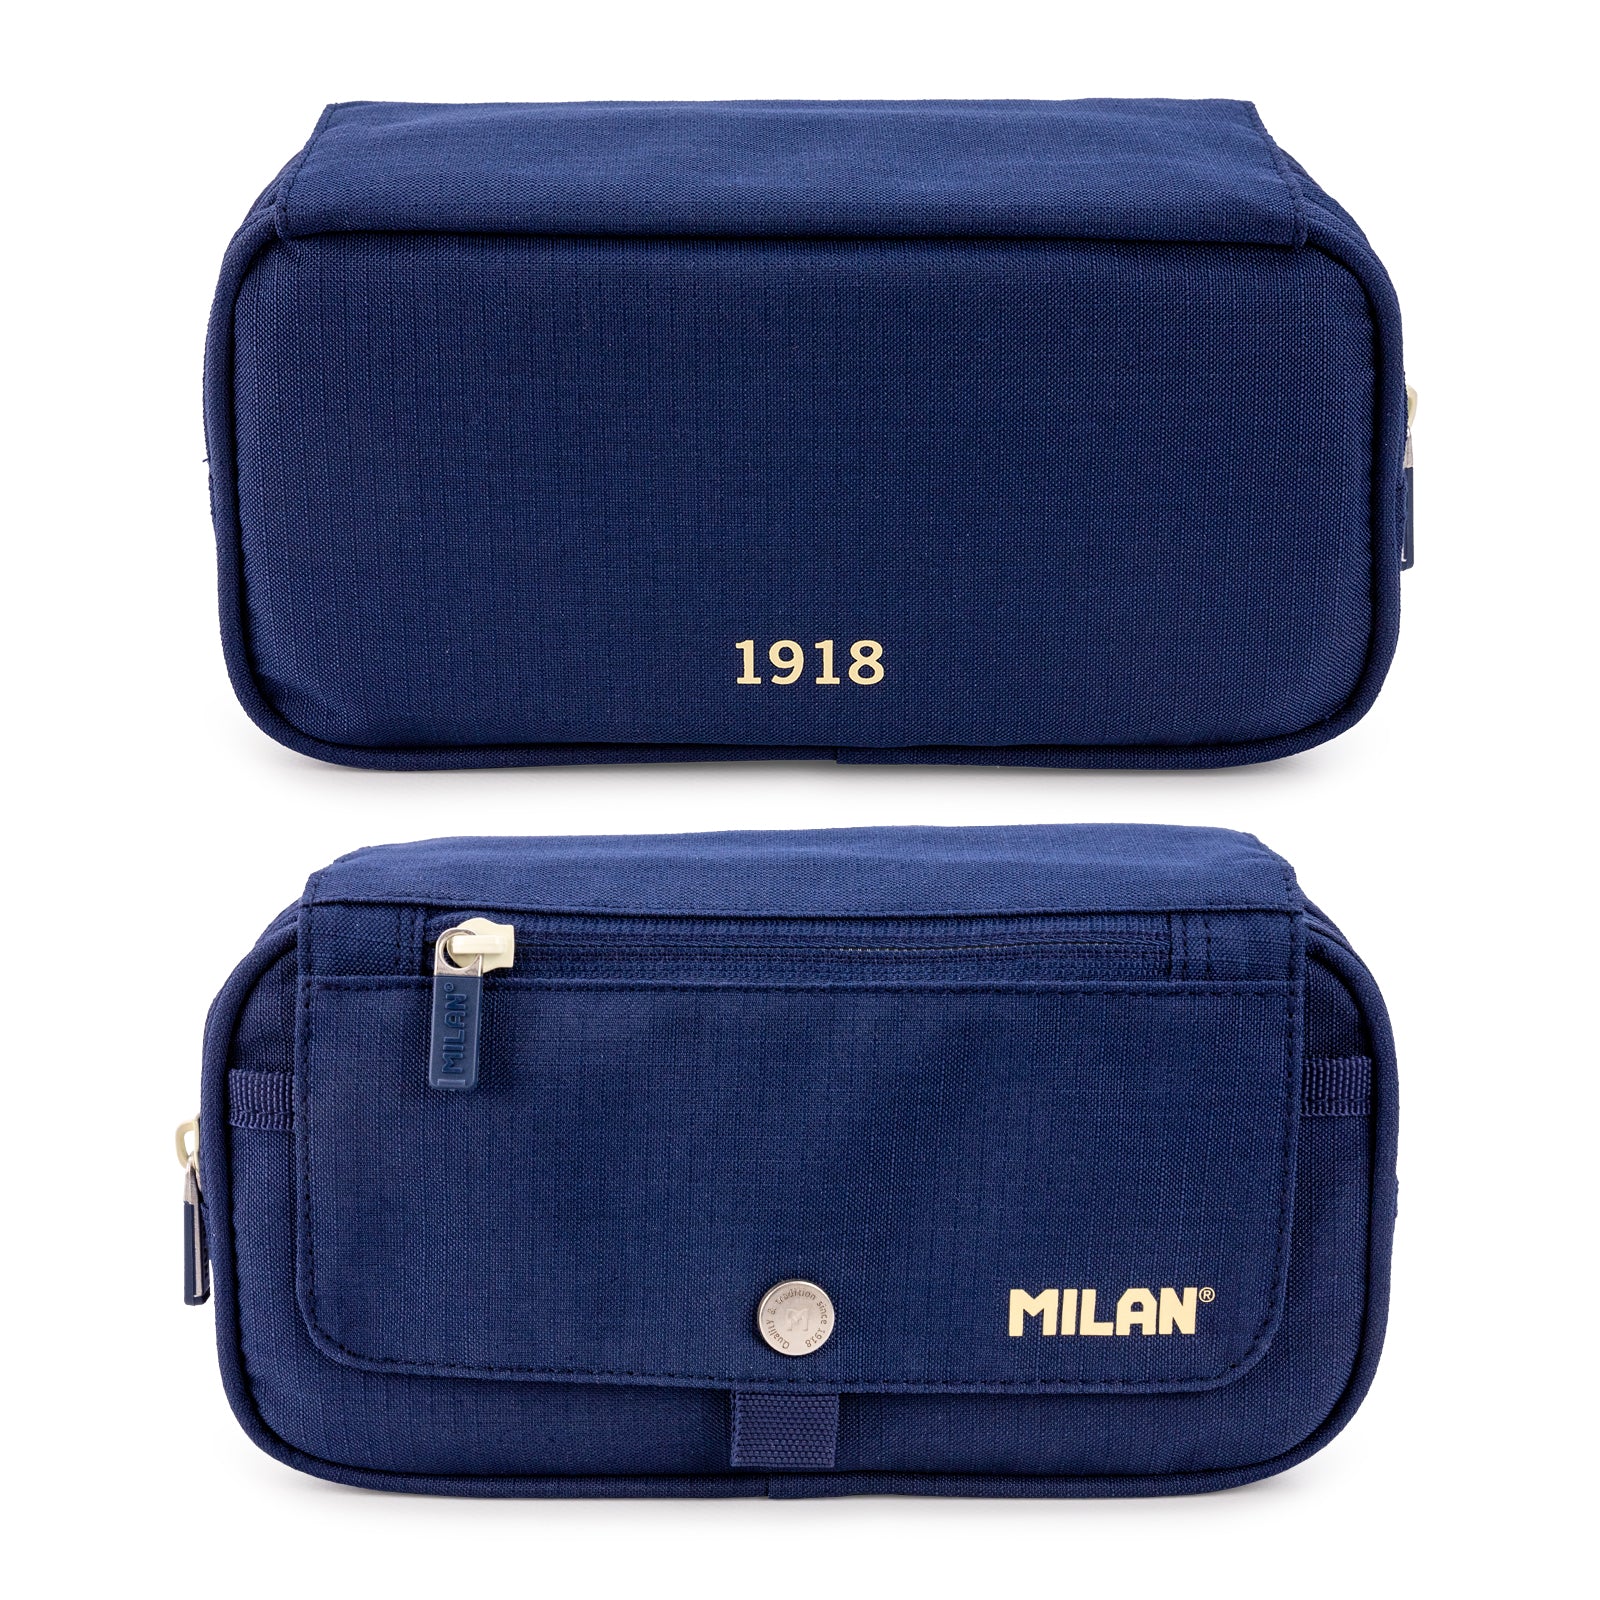 ColePack Milan - Estuche Triple de 3 Cremalleras y Material Escolar Incluido. Azul 1918